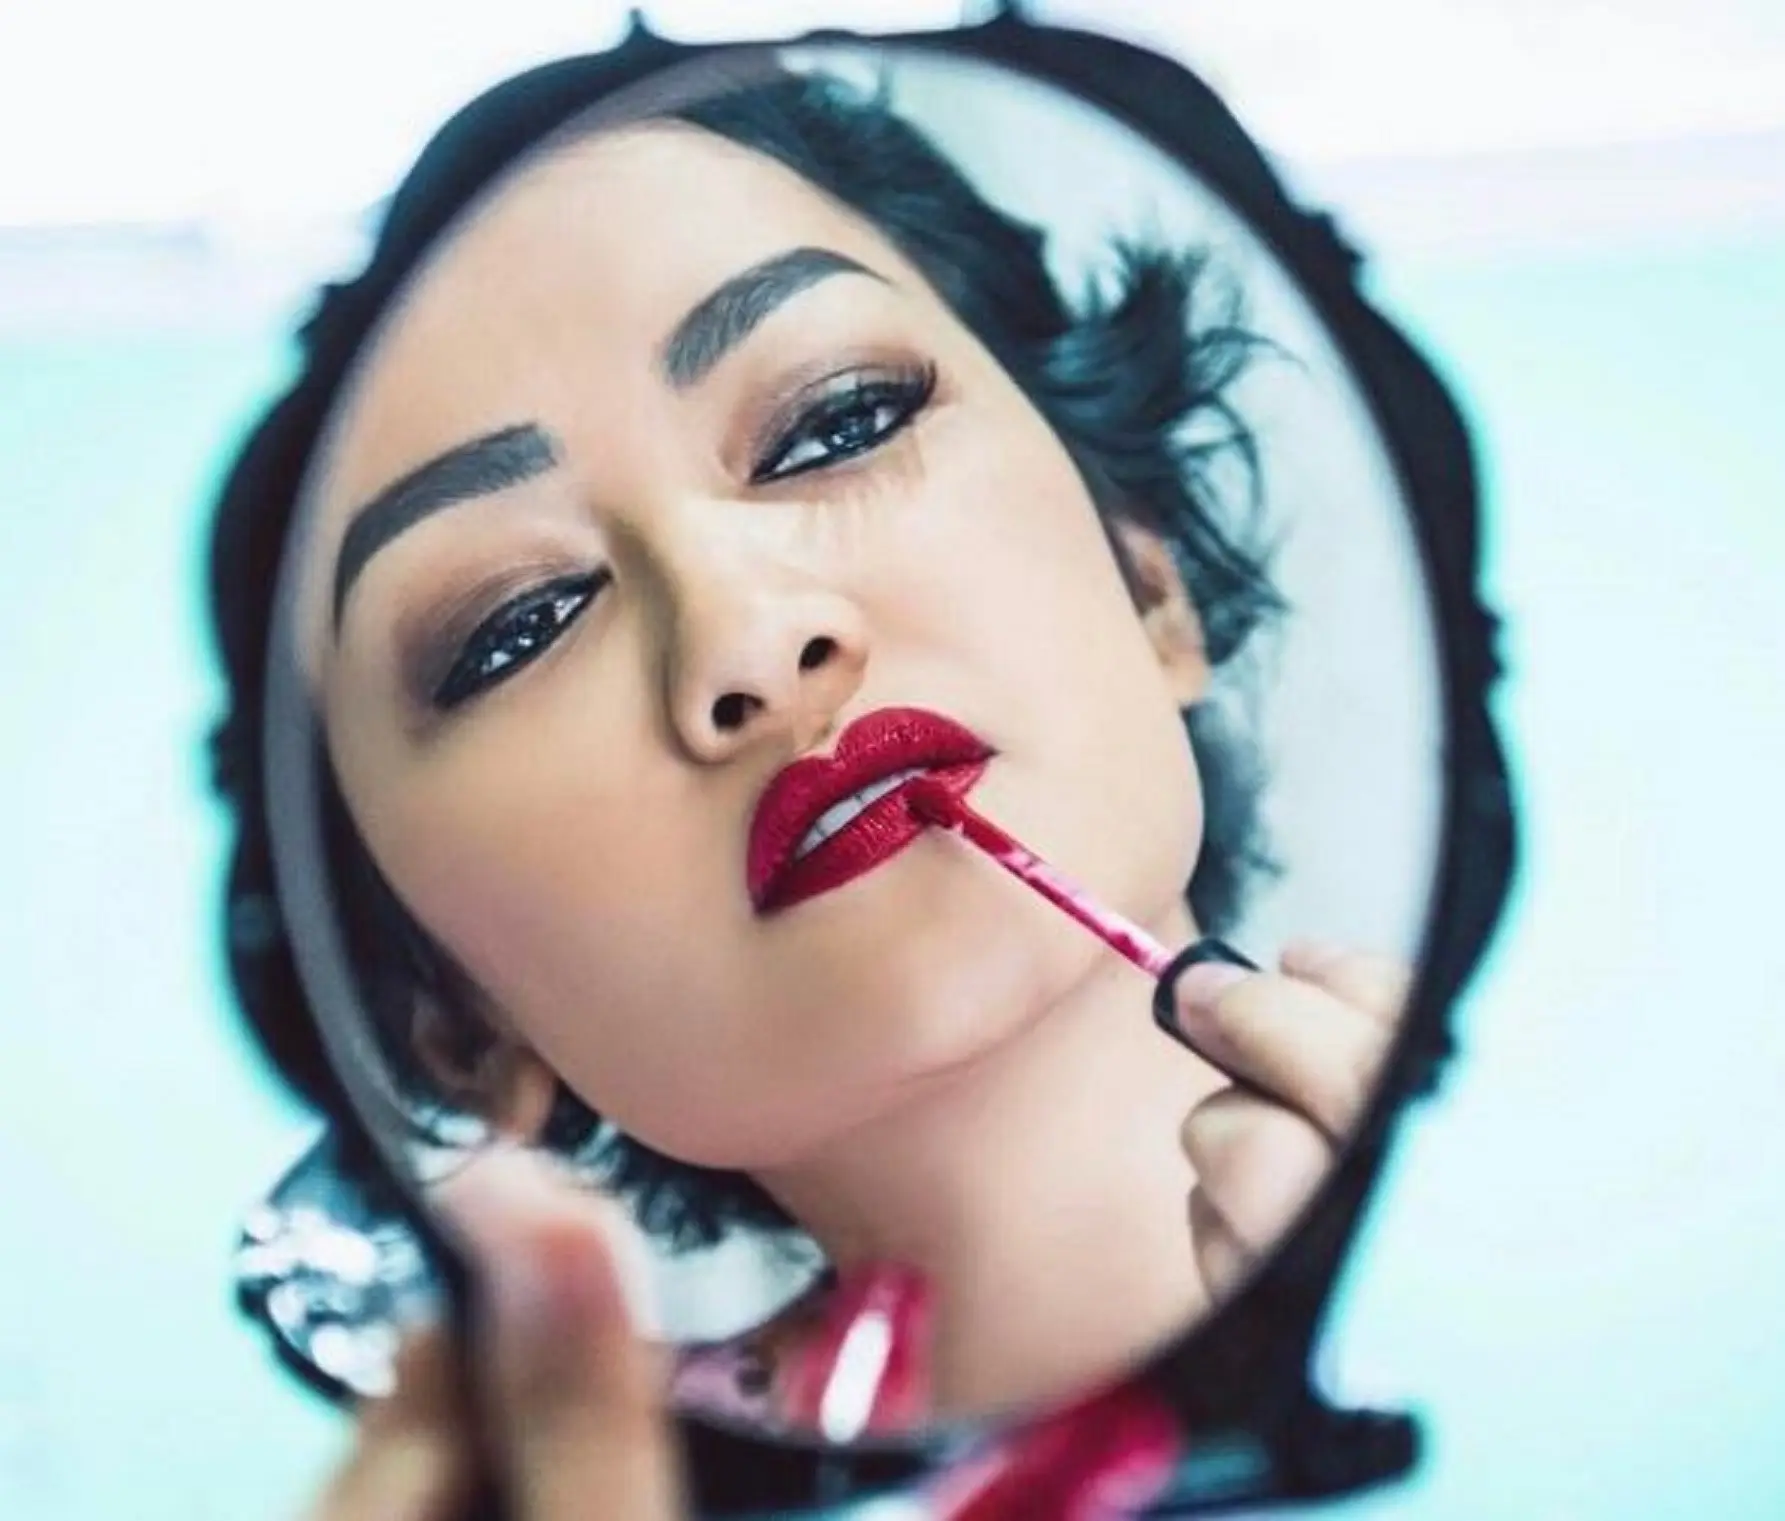 Julia Perez memulas bibirnya dengan lipstik merah (Instagram/@juliaperrezz)